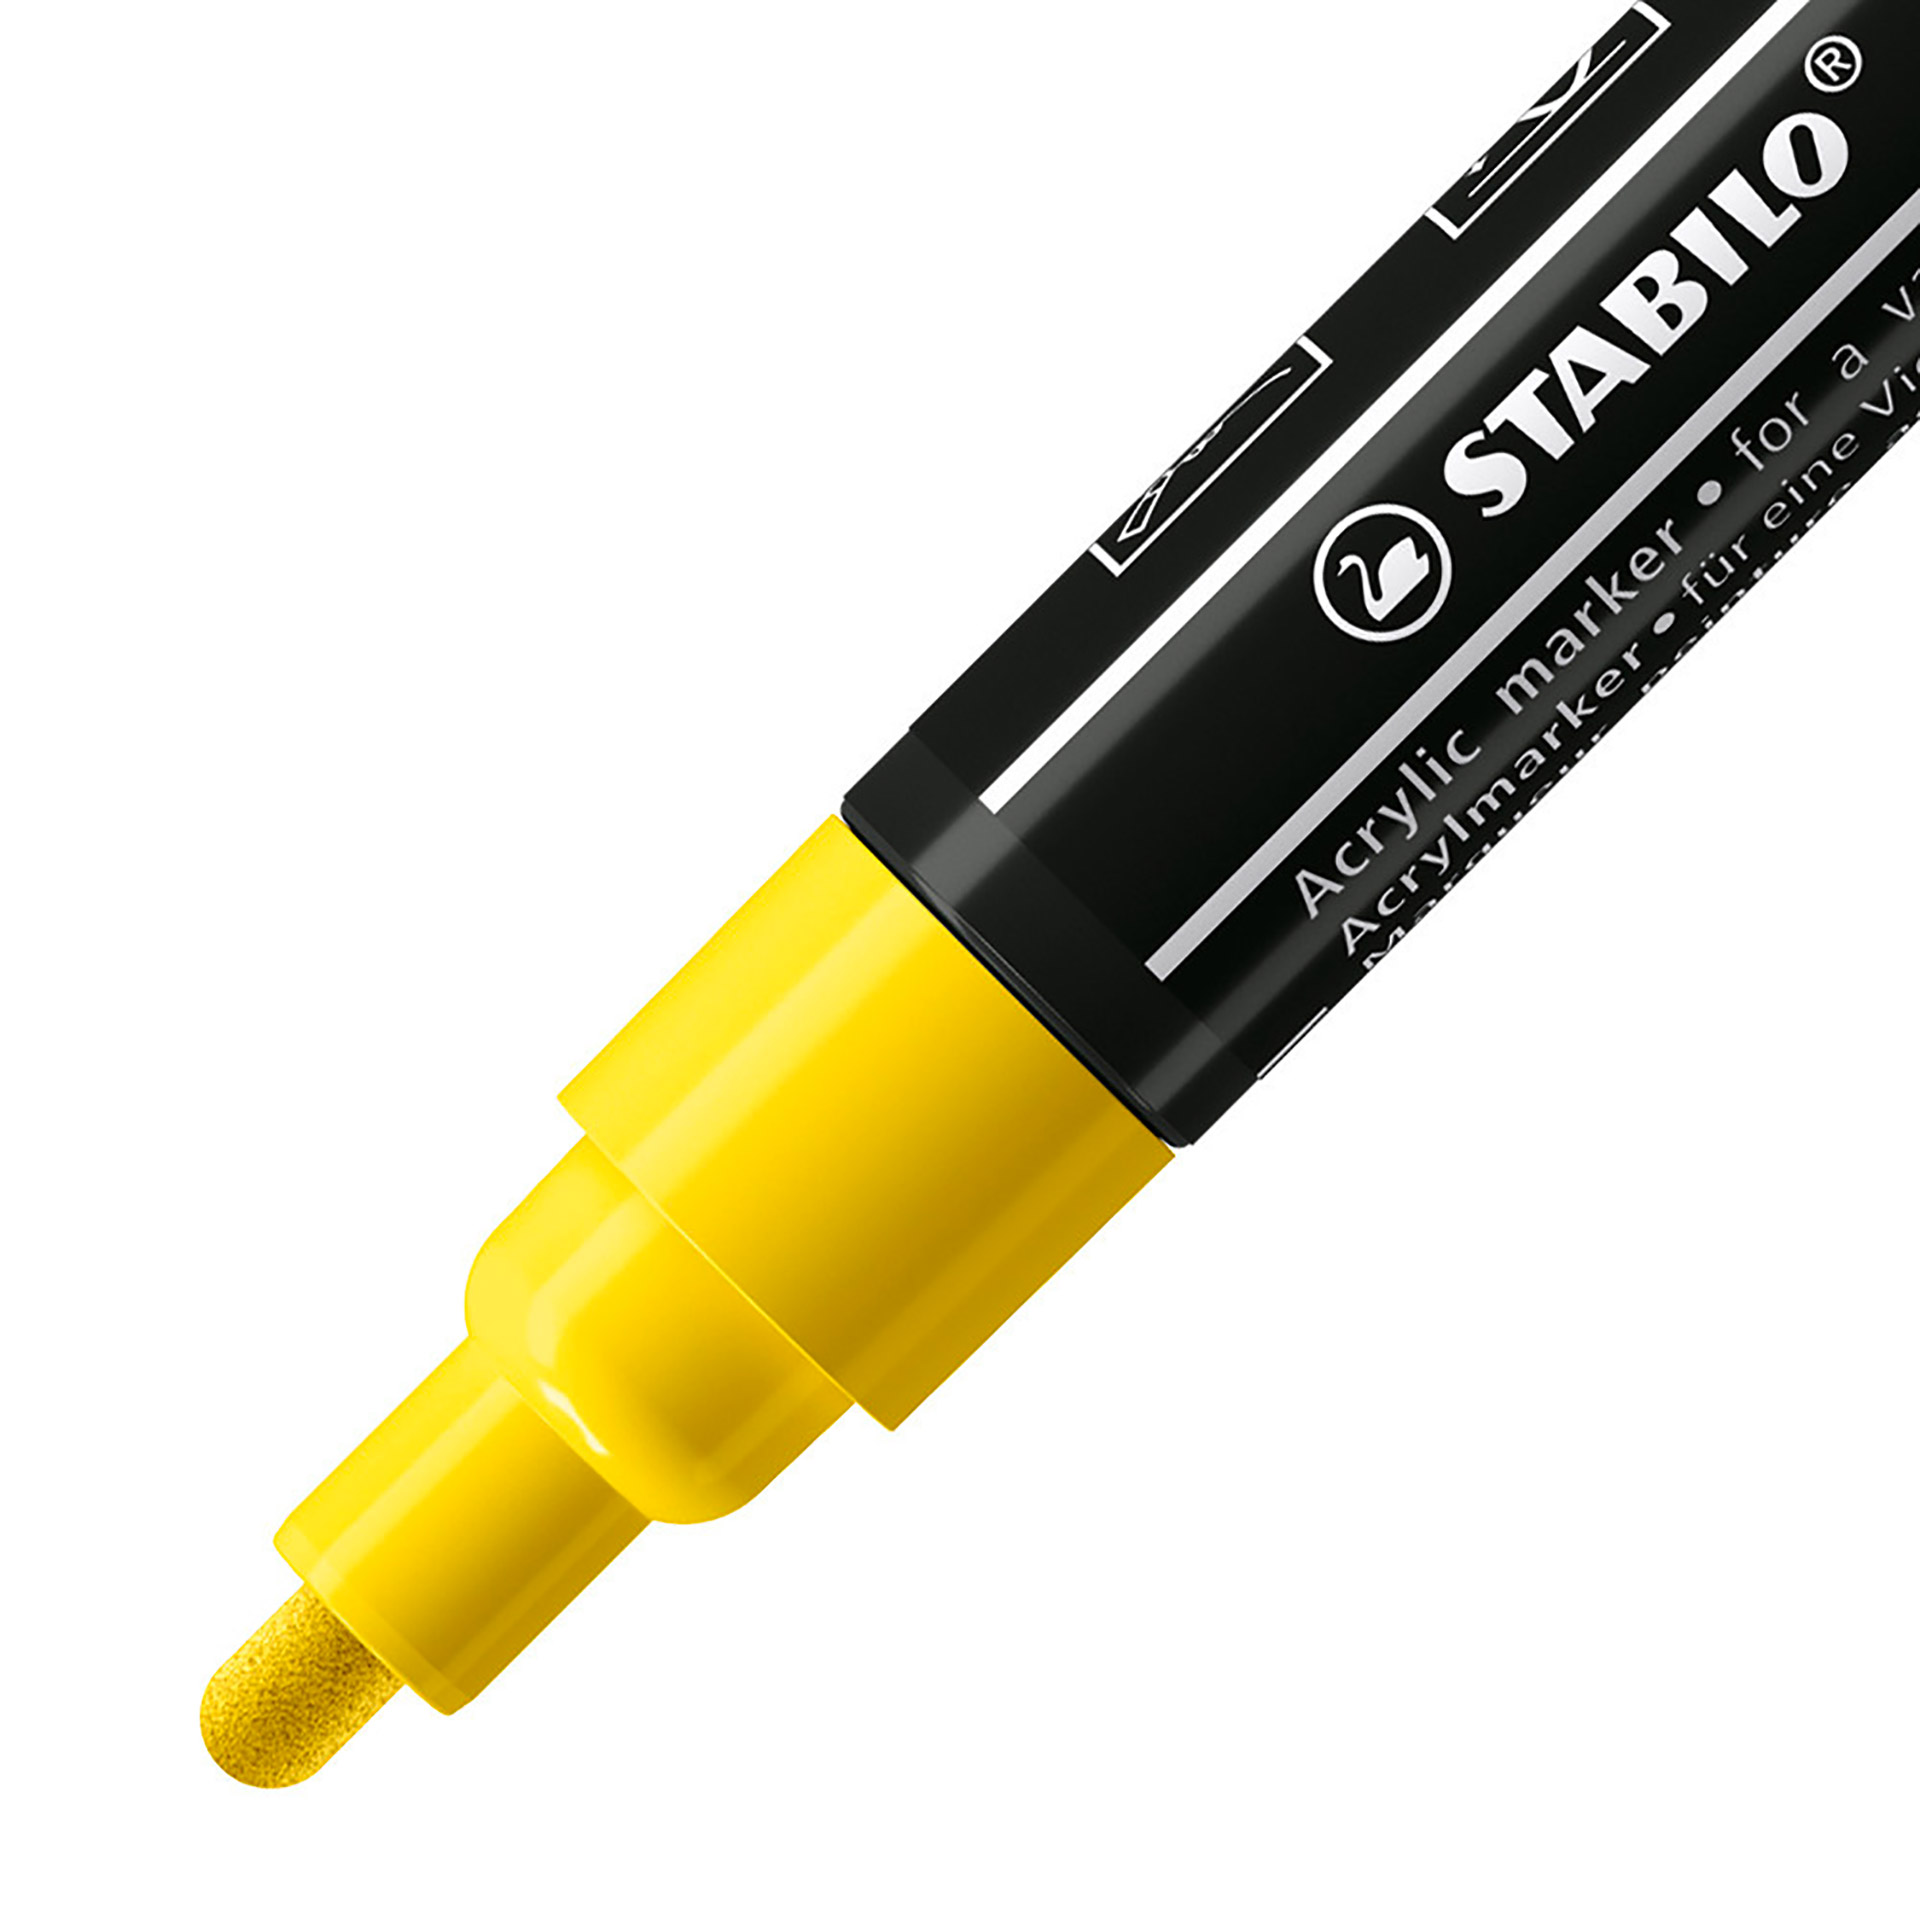 STABILO FREE Acrylic - T300 Punta rotonda 2-3mm - Confezione da 5 - Giallo, , large